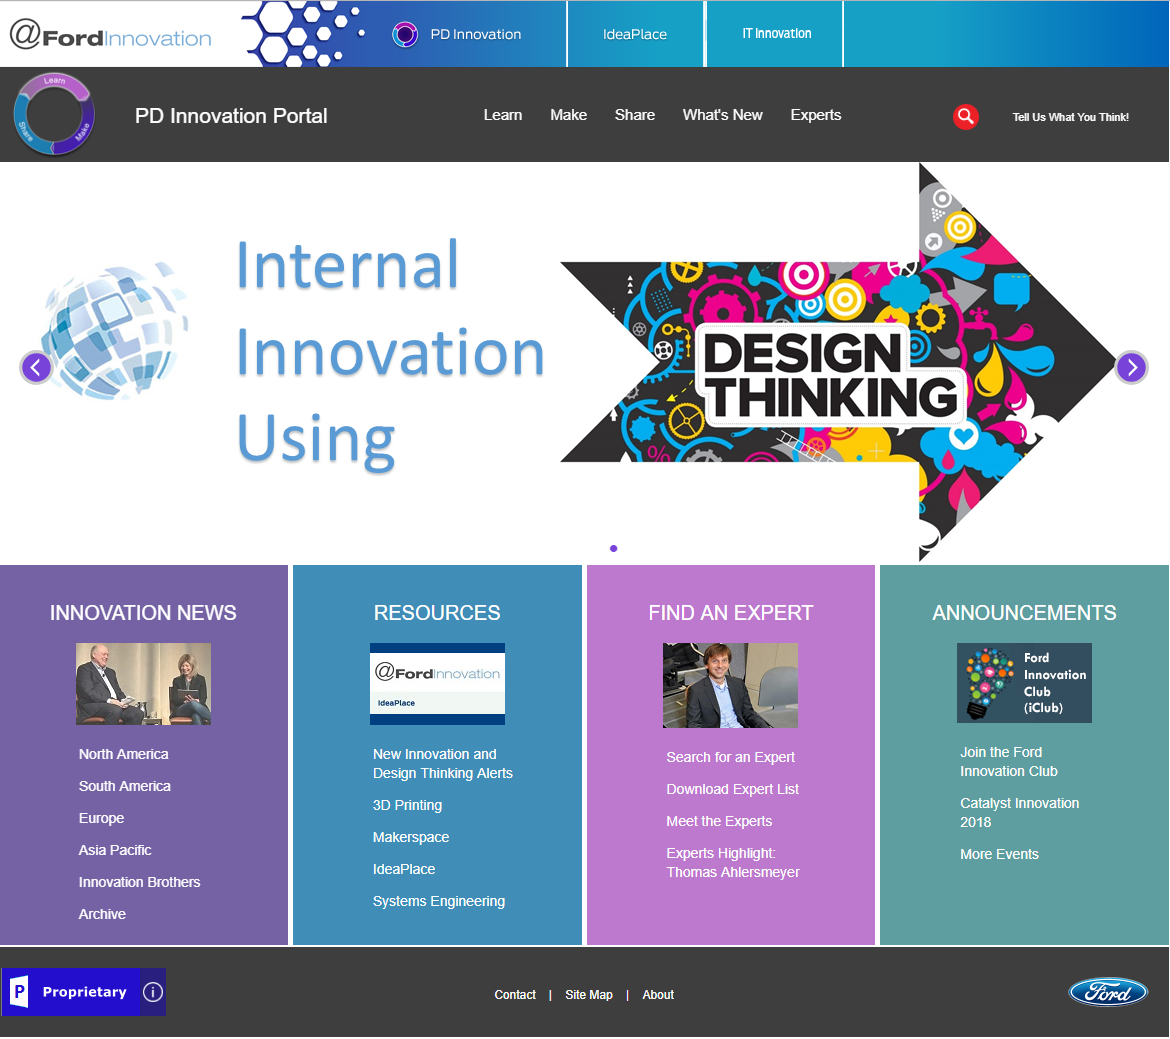 The Innovation Portal